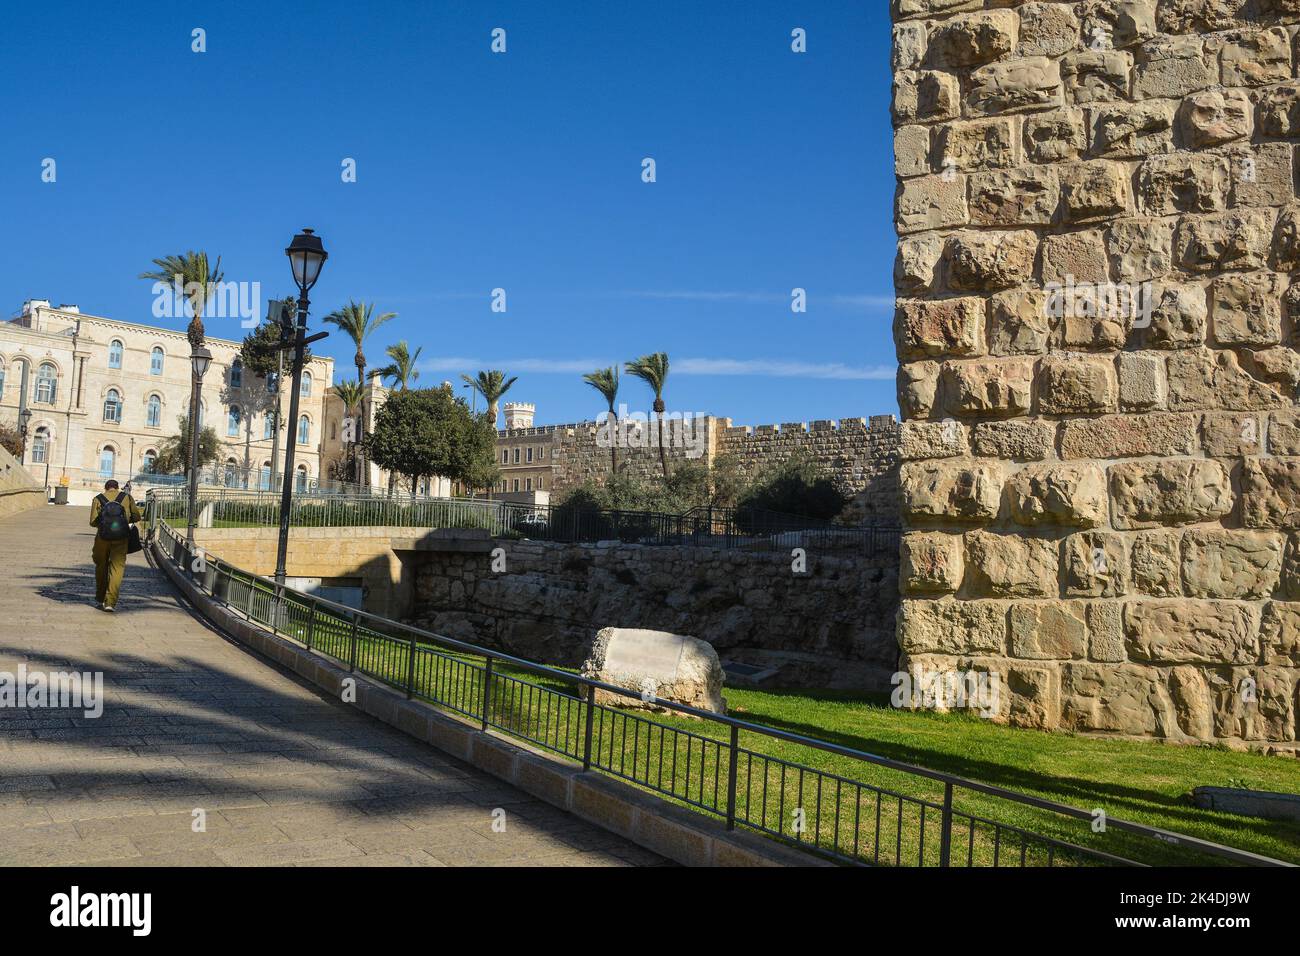 Mauern der Altstadt von Jerusalem. Das Stadtbild ist der historische Teil Jerusalems. Stockfoto